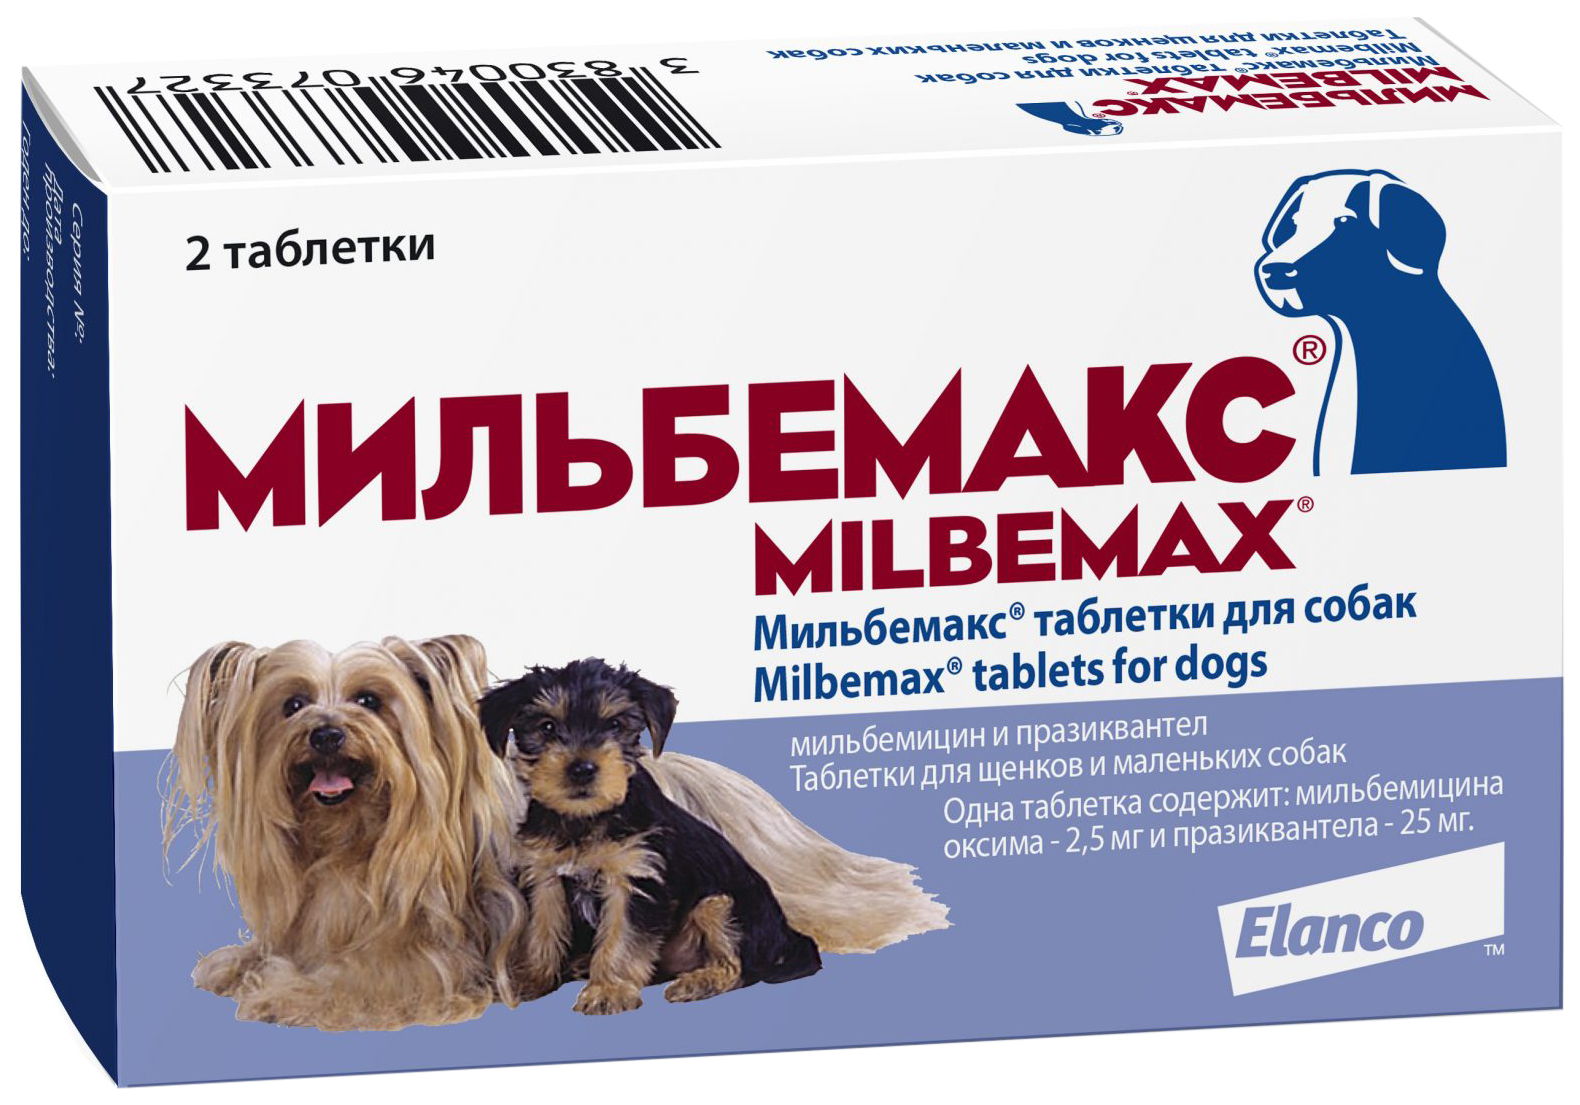 Антигельминтик Elanco  Мильбемакс от глистов для щенков и мелких собак (2 таблетки)